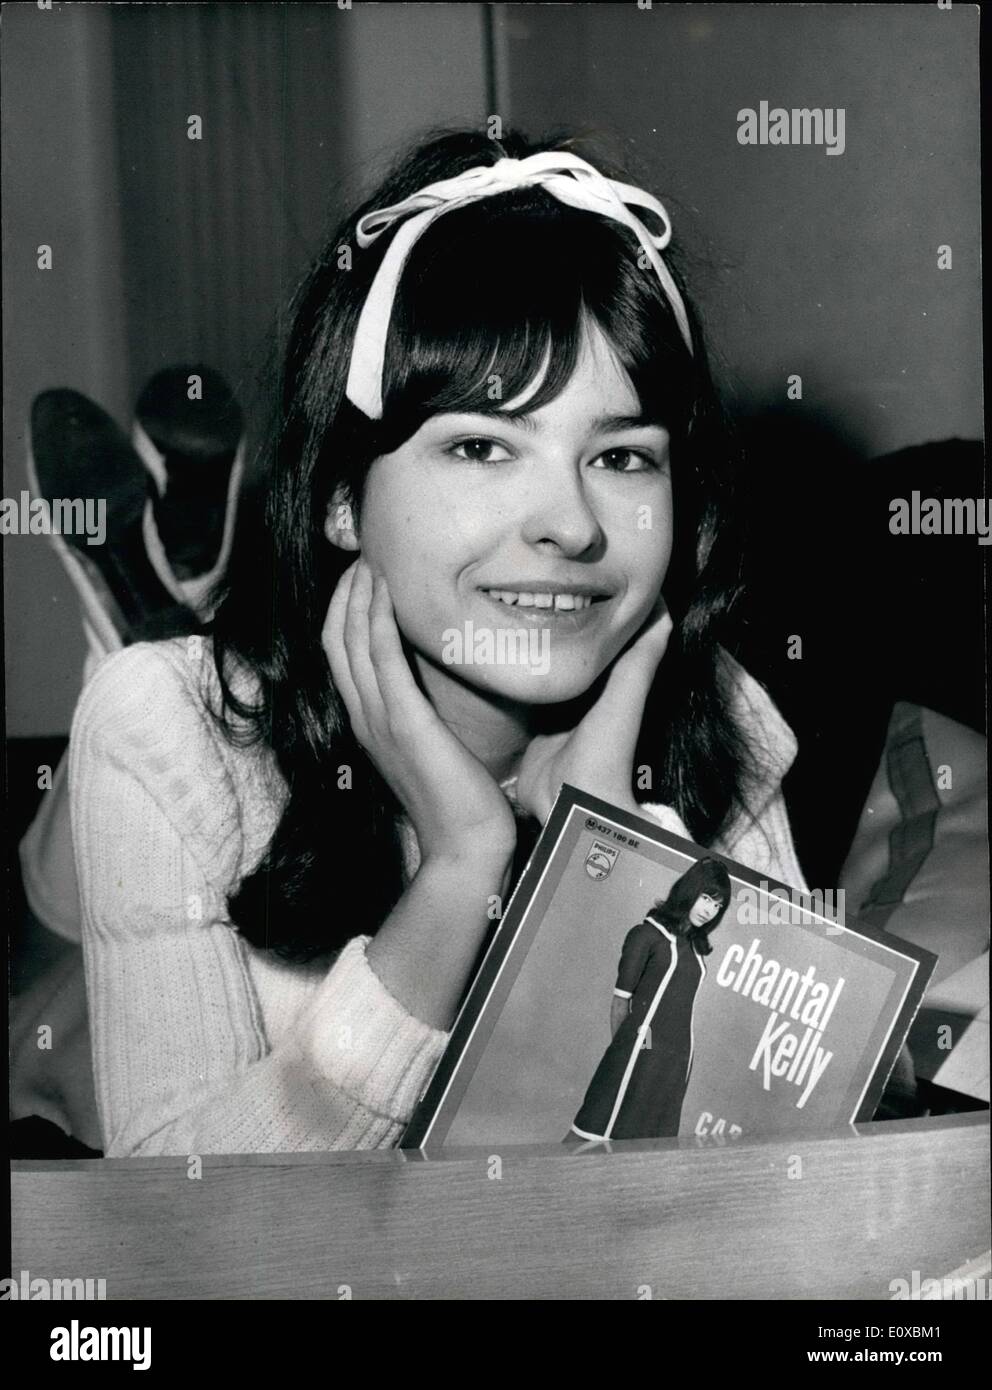 Febbraio 02, 1966 - 16-Year-Old singolo ama il colpo: Sedici- anno-vecchio Chantal Kelly da Marsiglia è il nuovo nuovo arrivato a Foto Stock